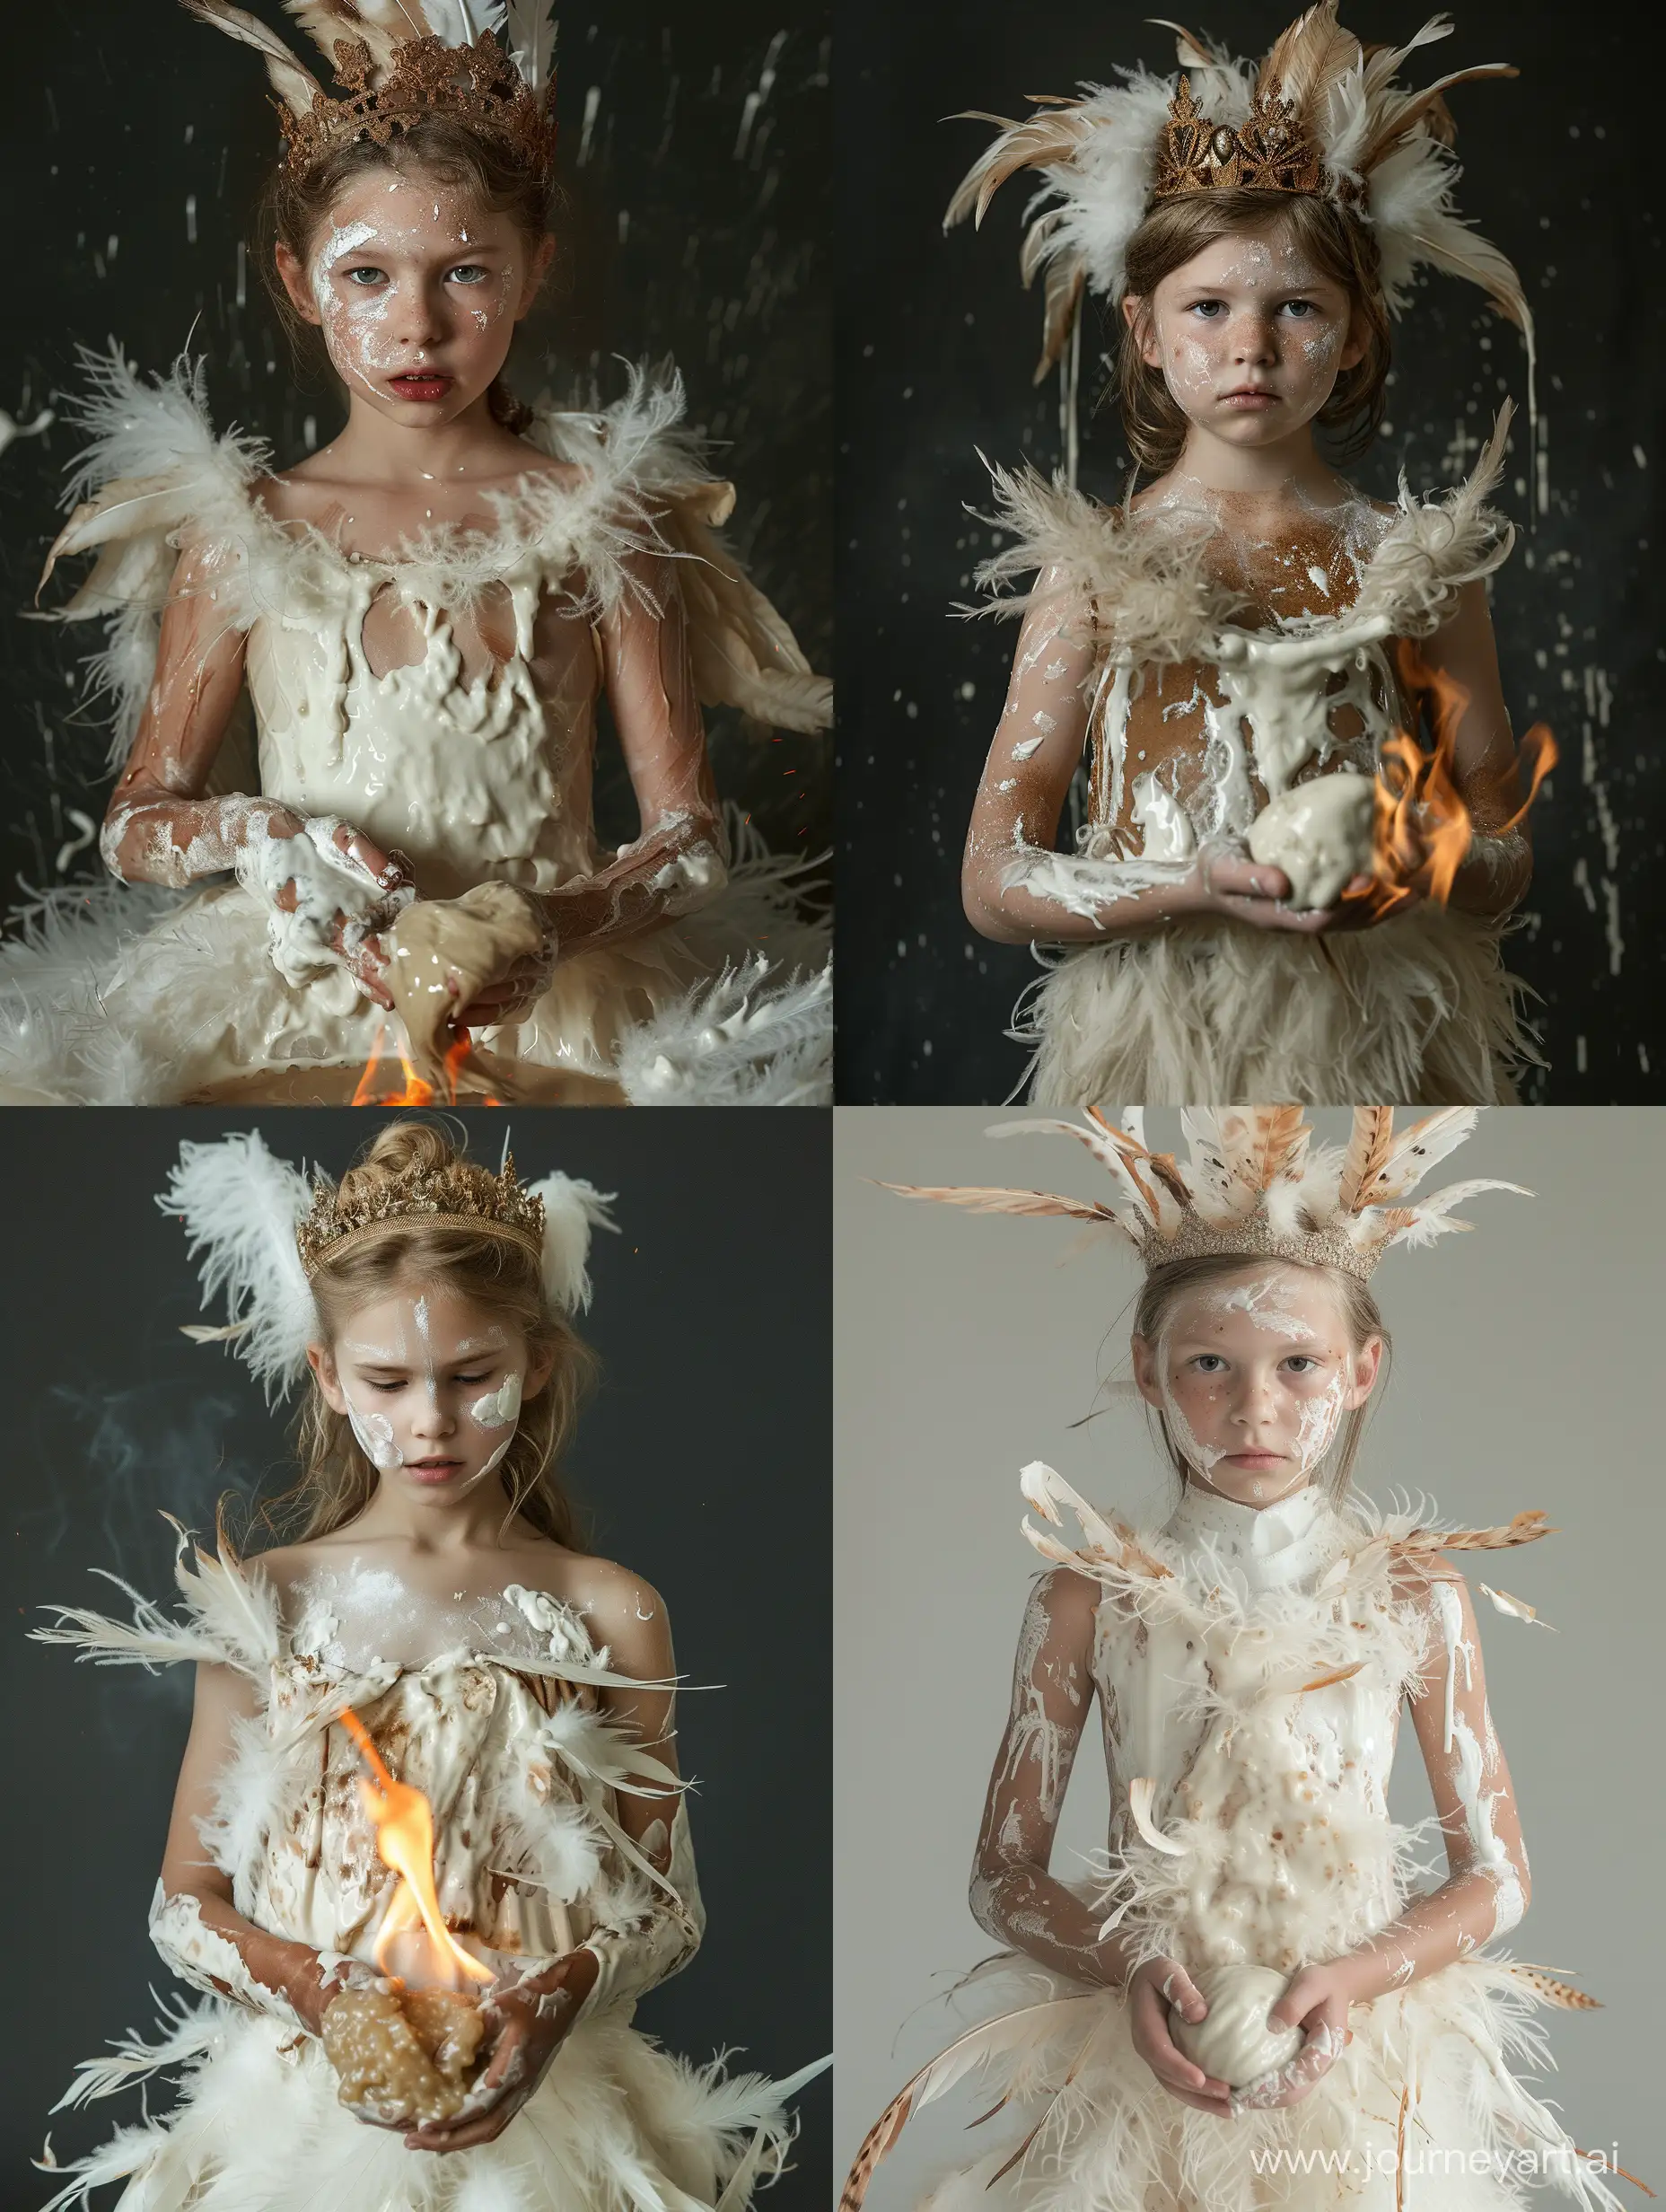 высокодетализированный 
фэшн портрет по пояс. девочка 12 лет, в перьях, с короной. заляпанная белой краской. платье на ней горит. в ее руках комок липкой белой слизи . фэшн фотография.